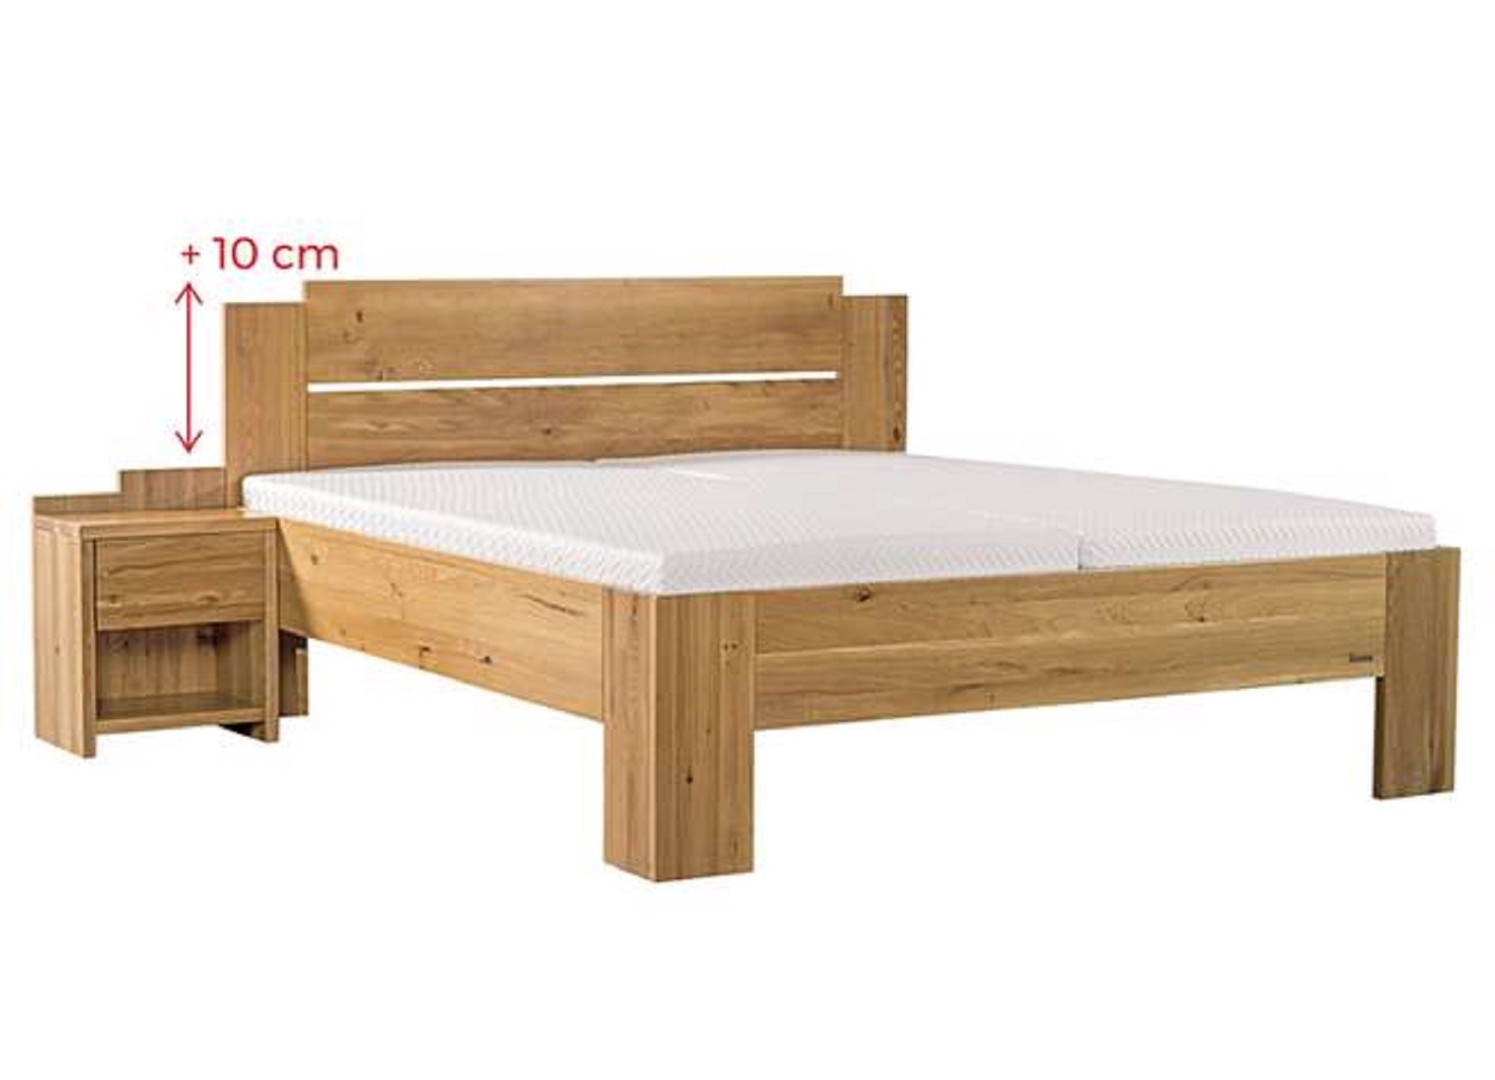 Ahorn GRADO MAX - masivní buková postel se zvýšeným čelem 160 x 200 cm, buk masiv